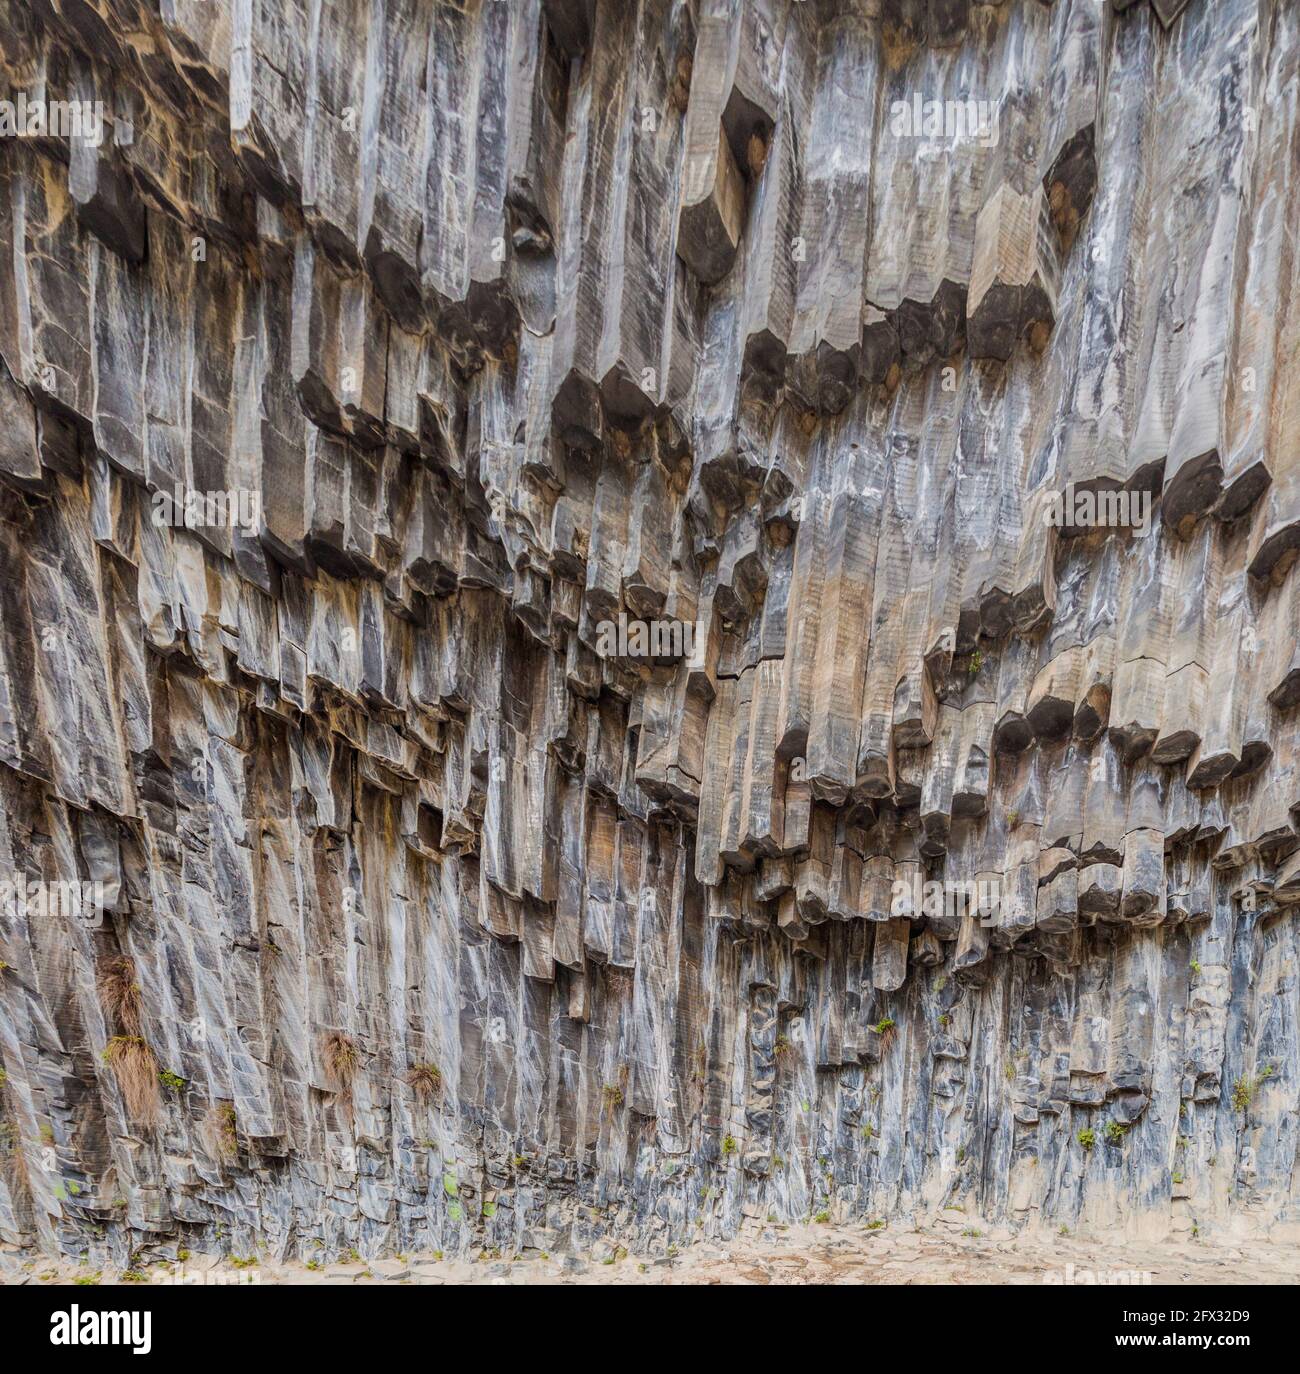 Basaltsäulenformation genannt Symphonie der Steine entlang der Garni-Schlucht, Armenien Stockfoto